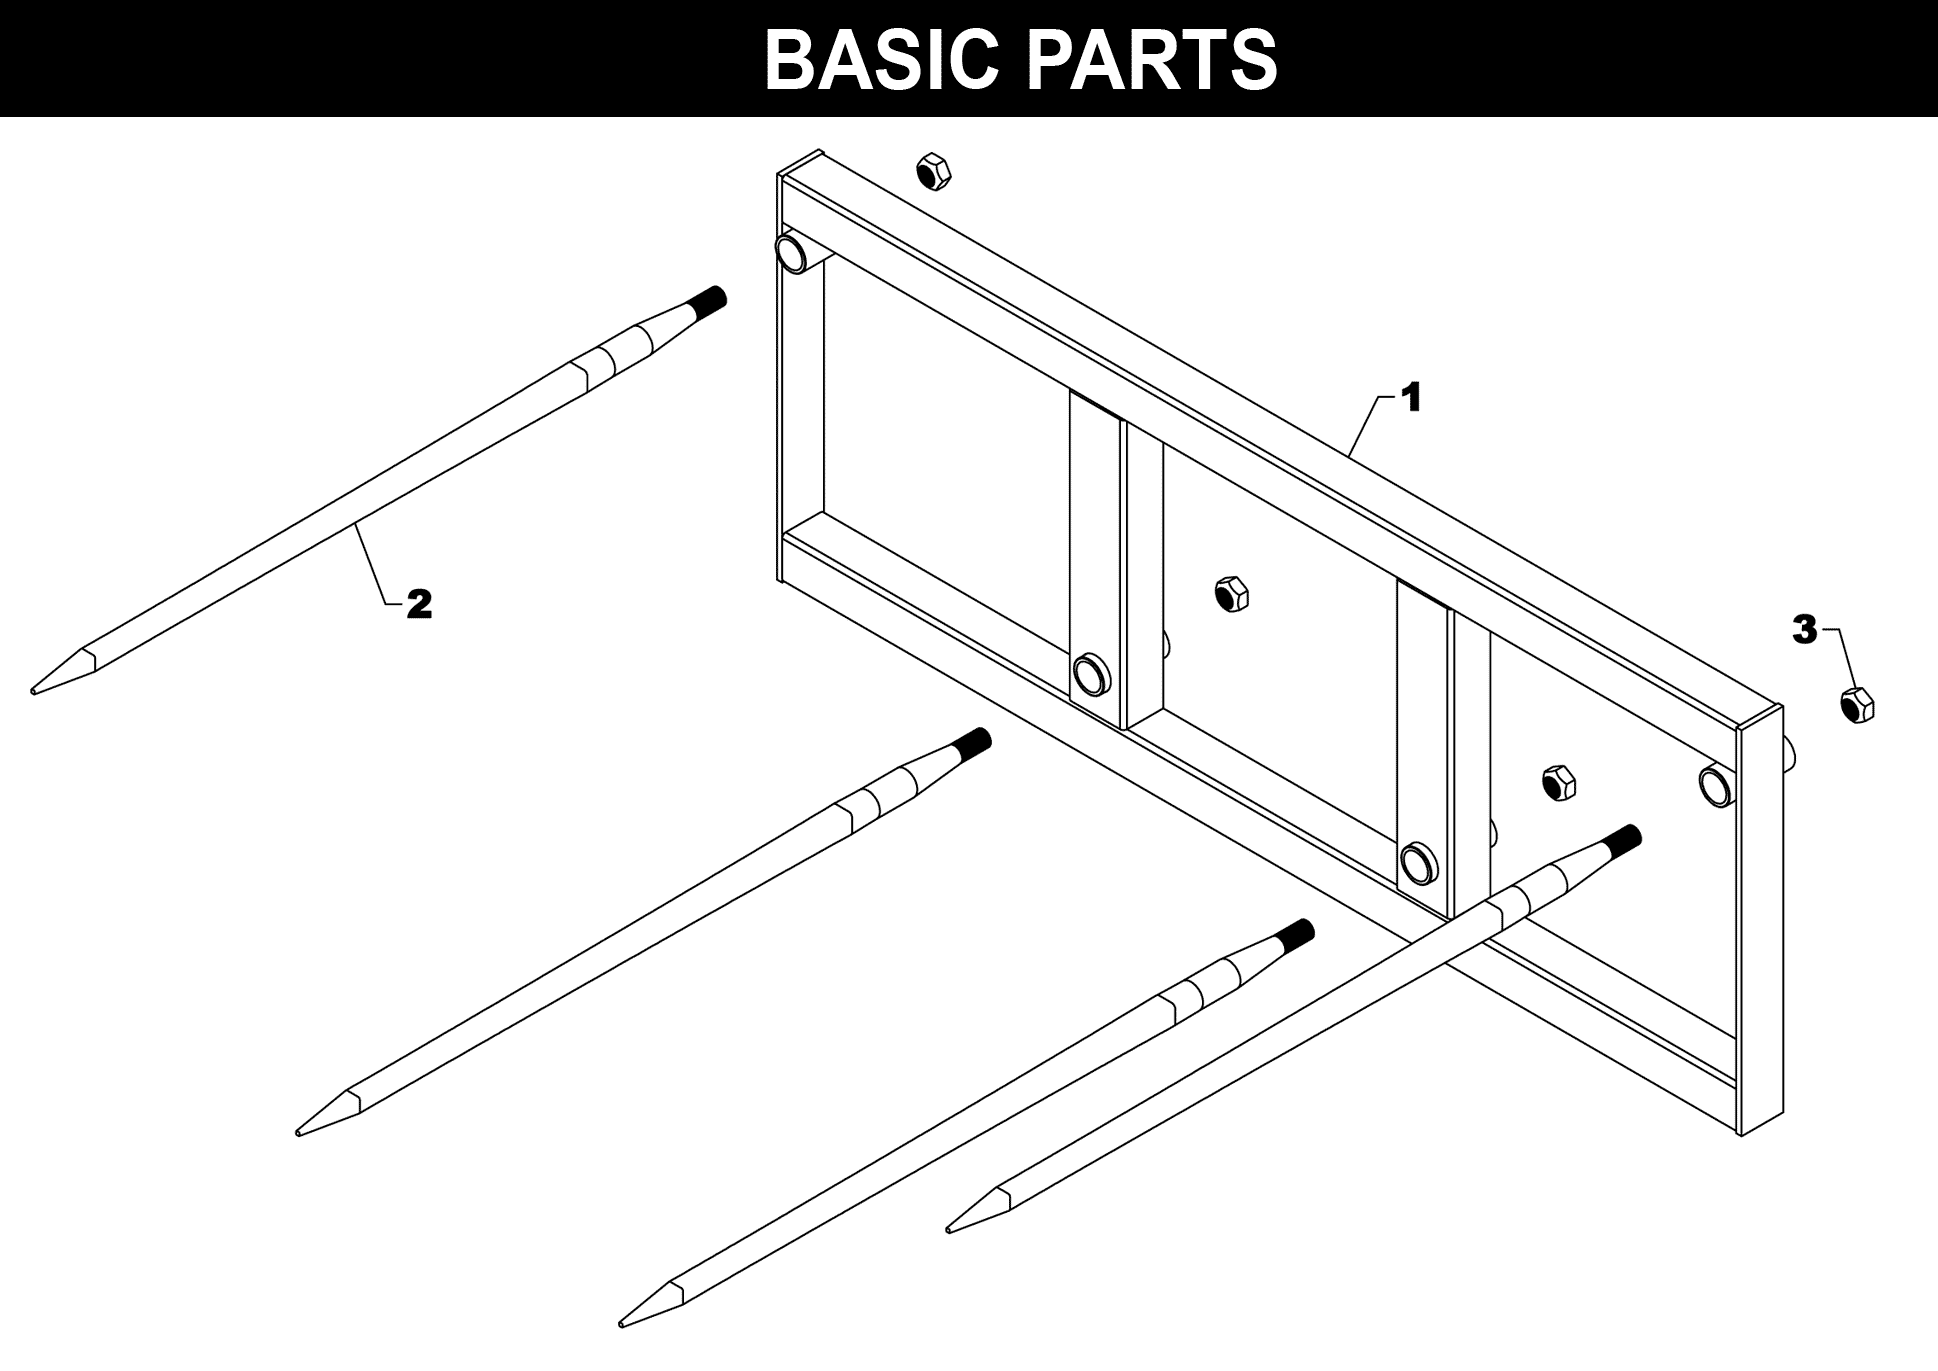 SP-74 Basic Parts